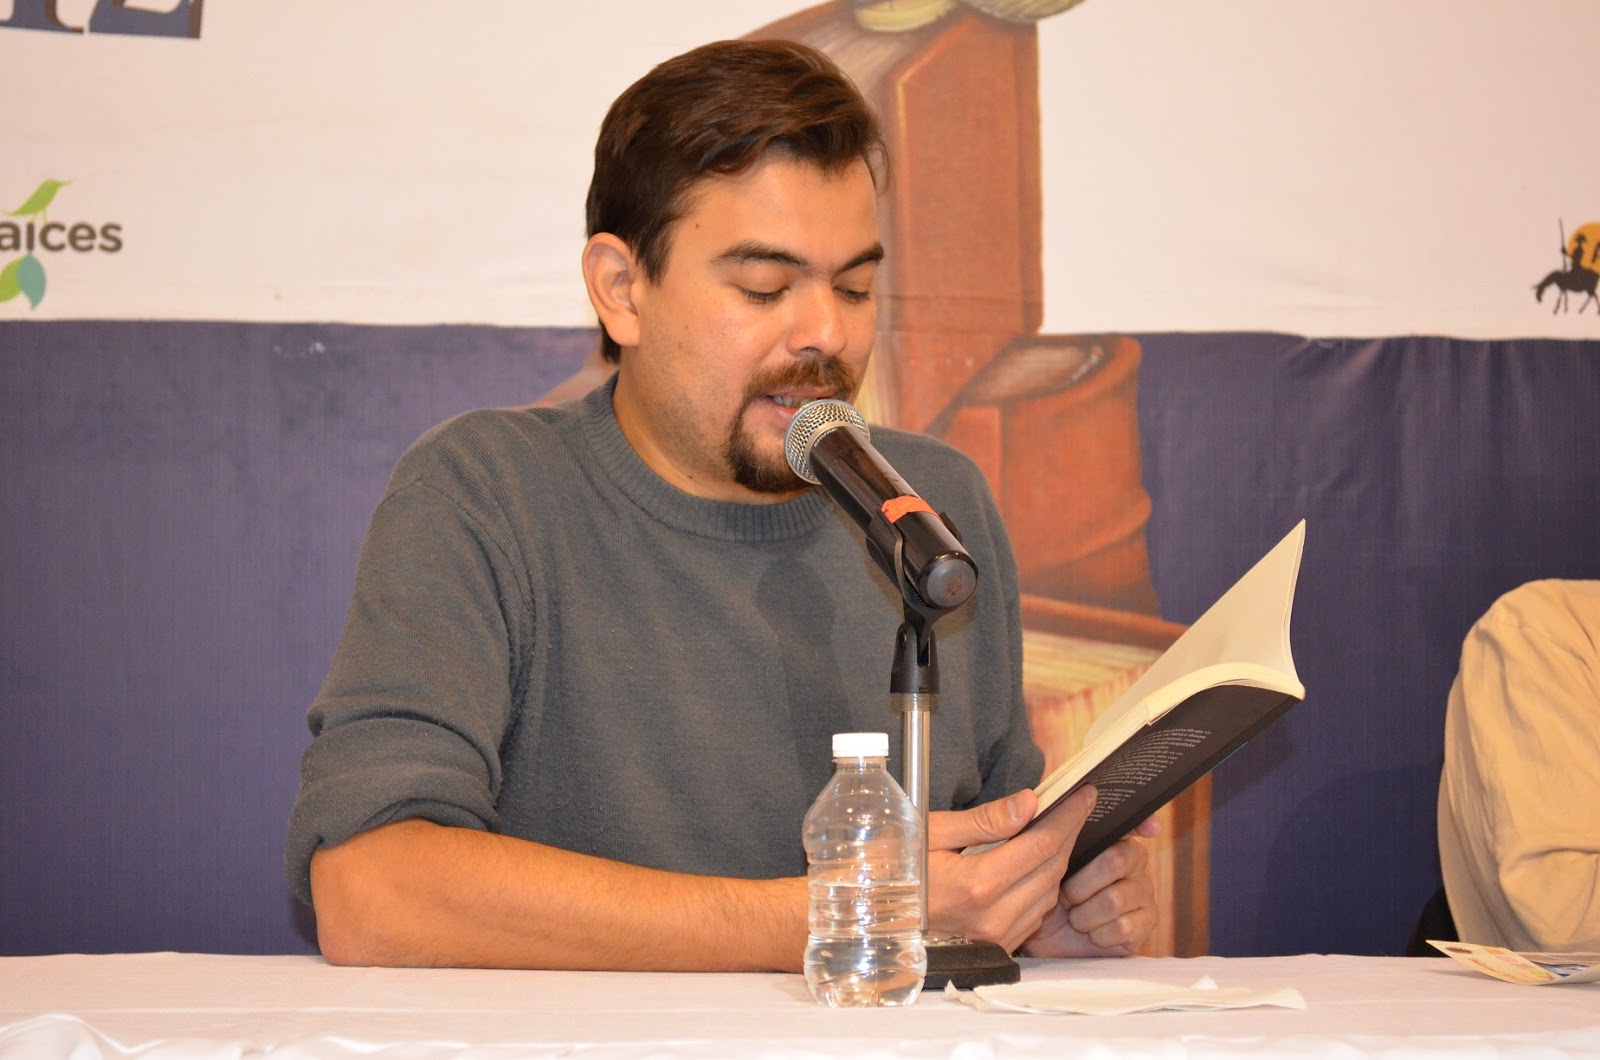 El autor en la presentación de uno de sus libros (circa 2012).